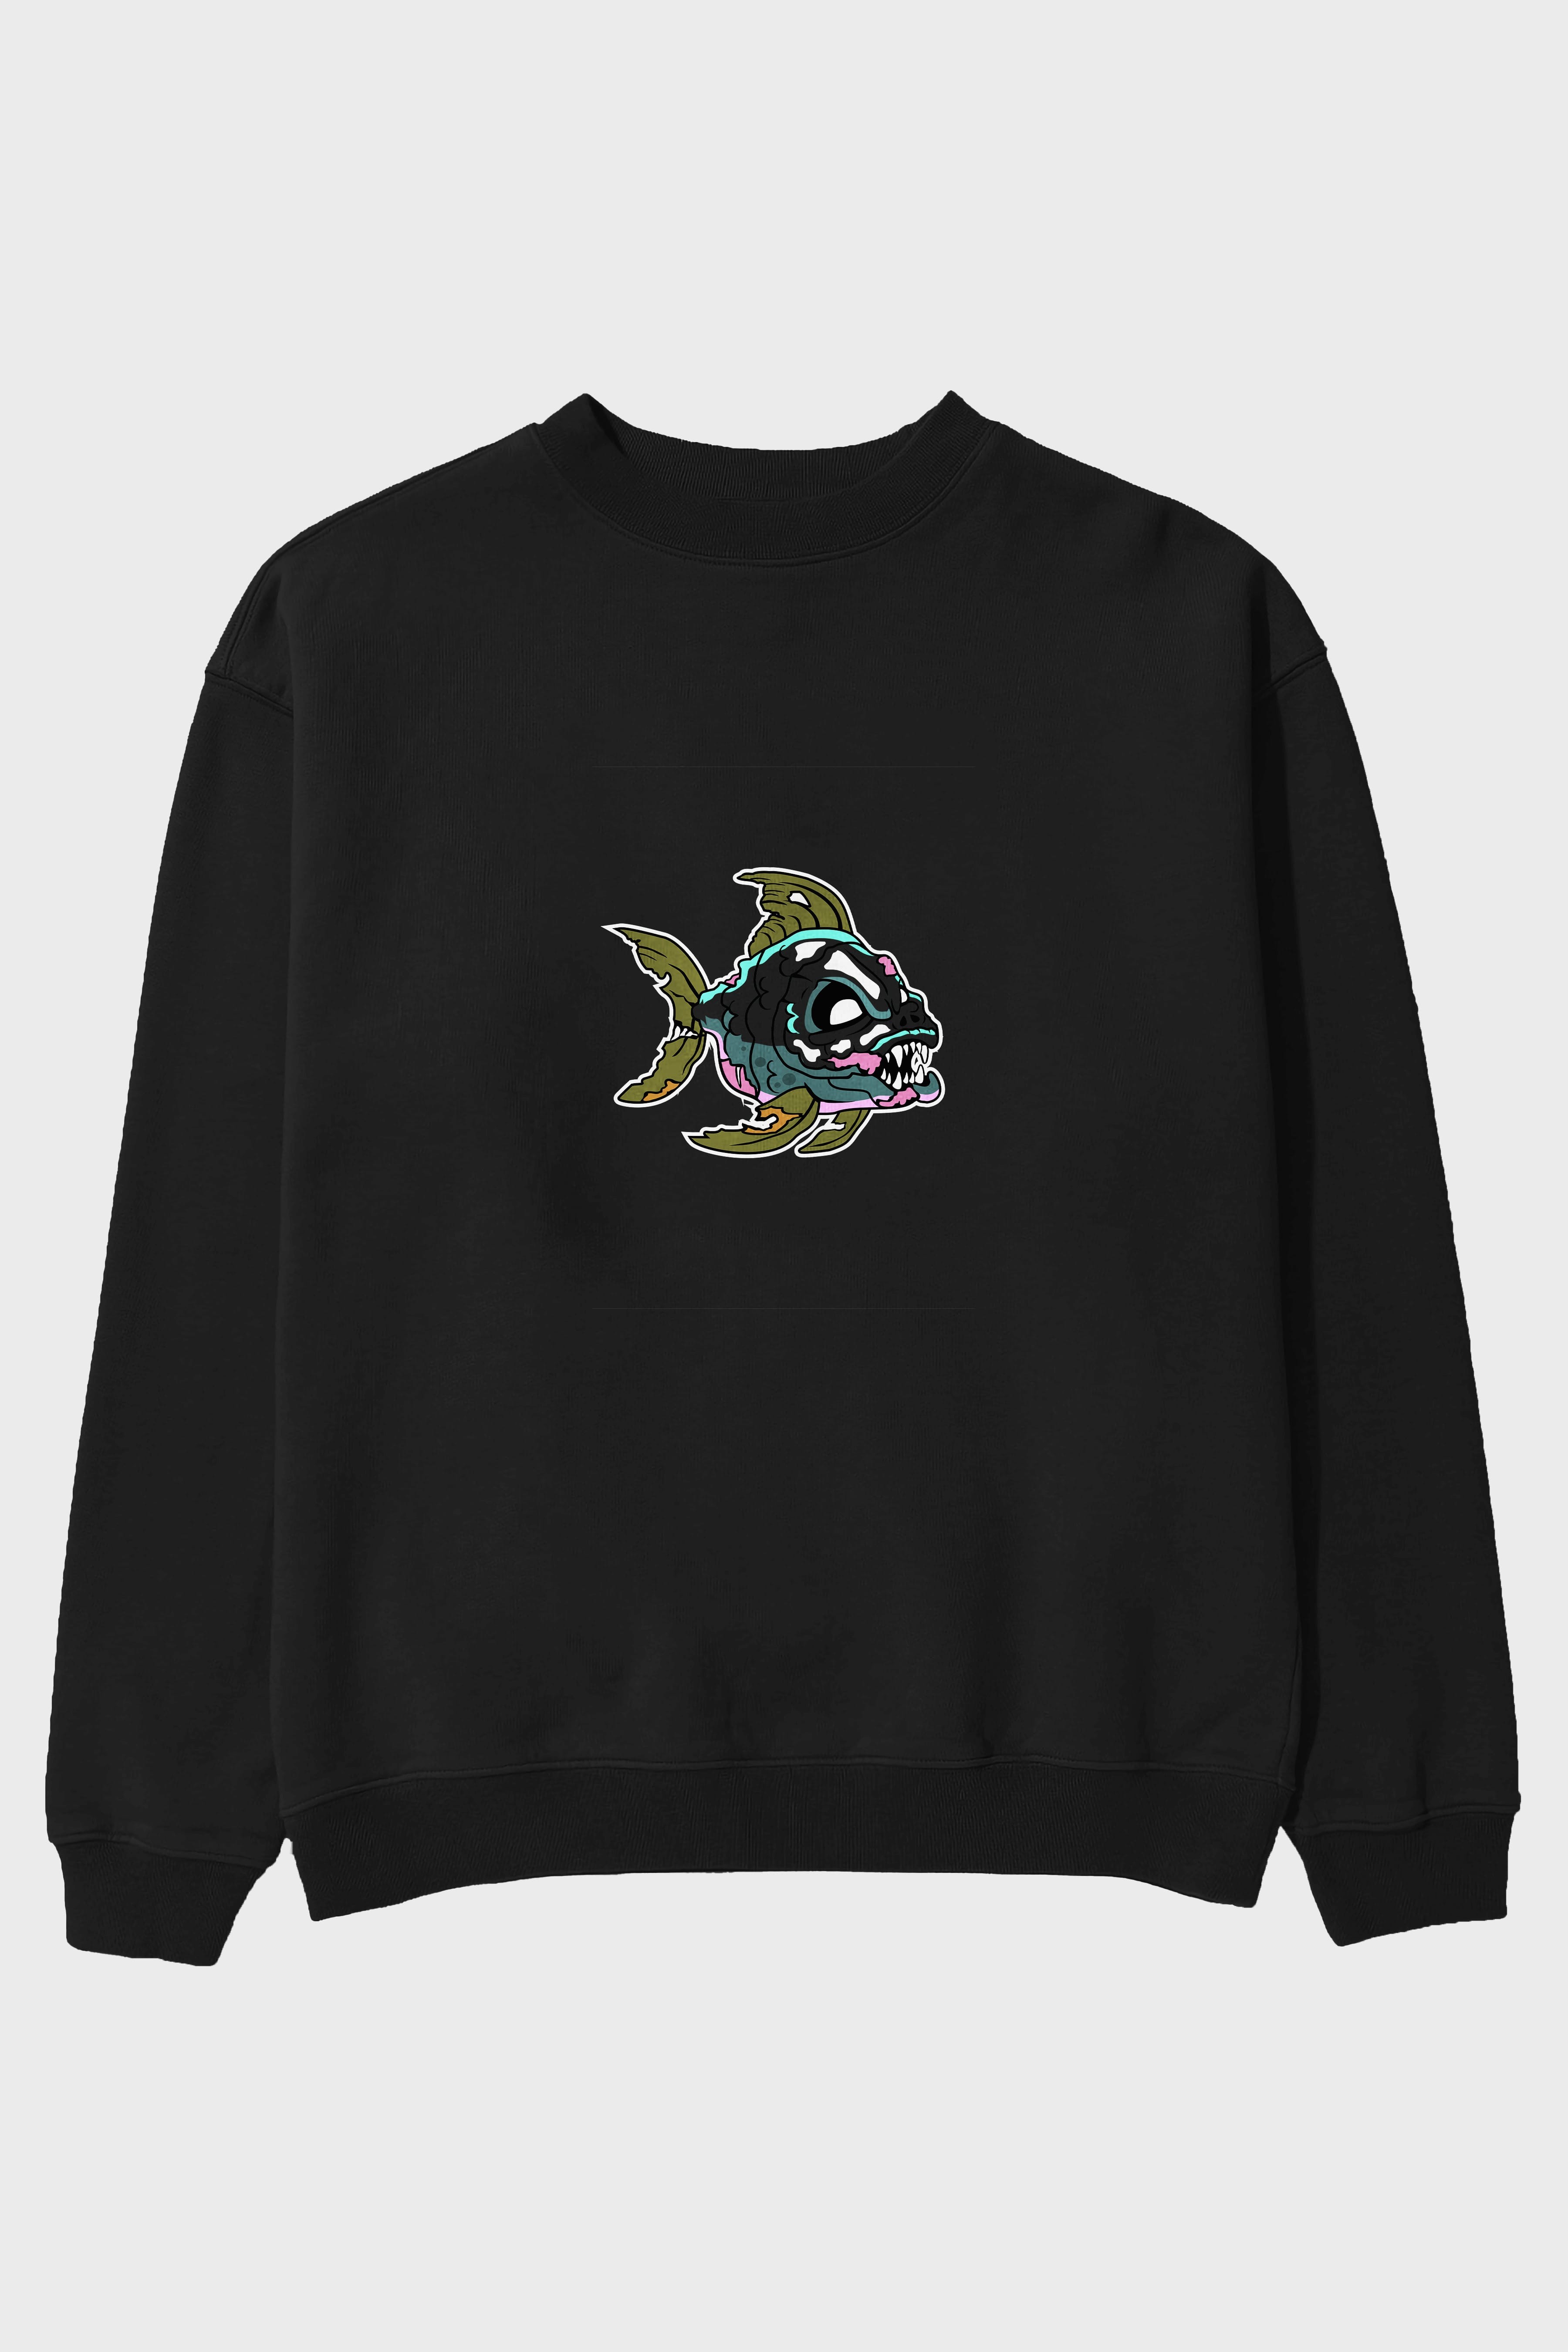 Fish Monster Ön Baskılı Oversize Sweatshirt Erkek Kadın Unisex